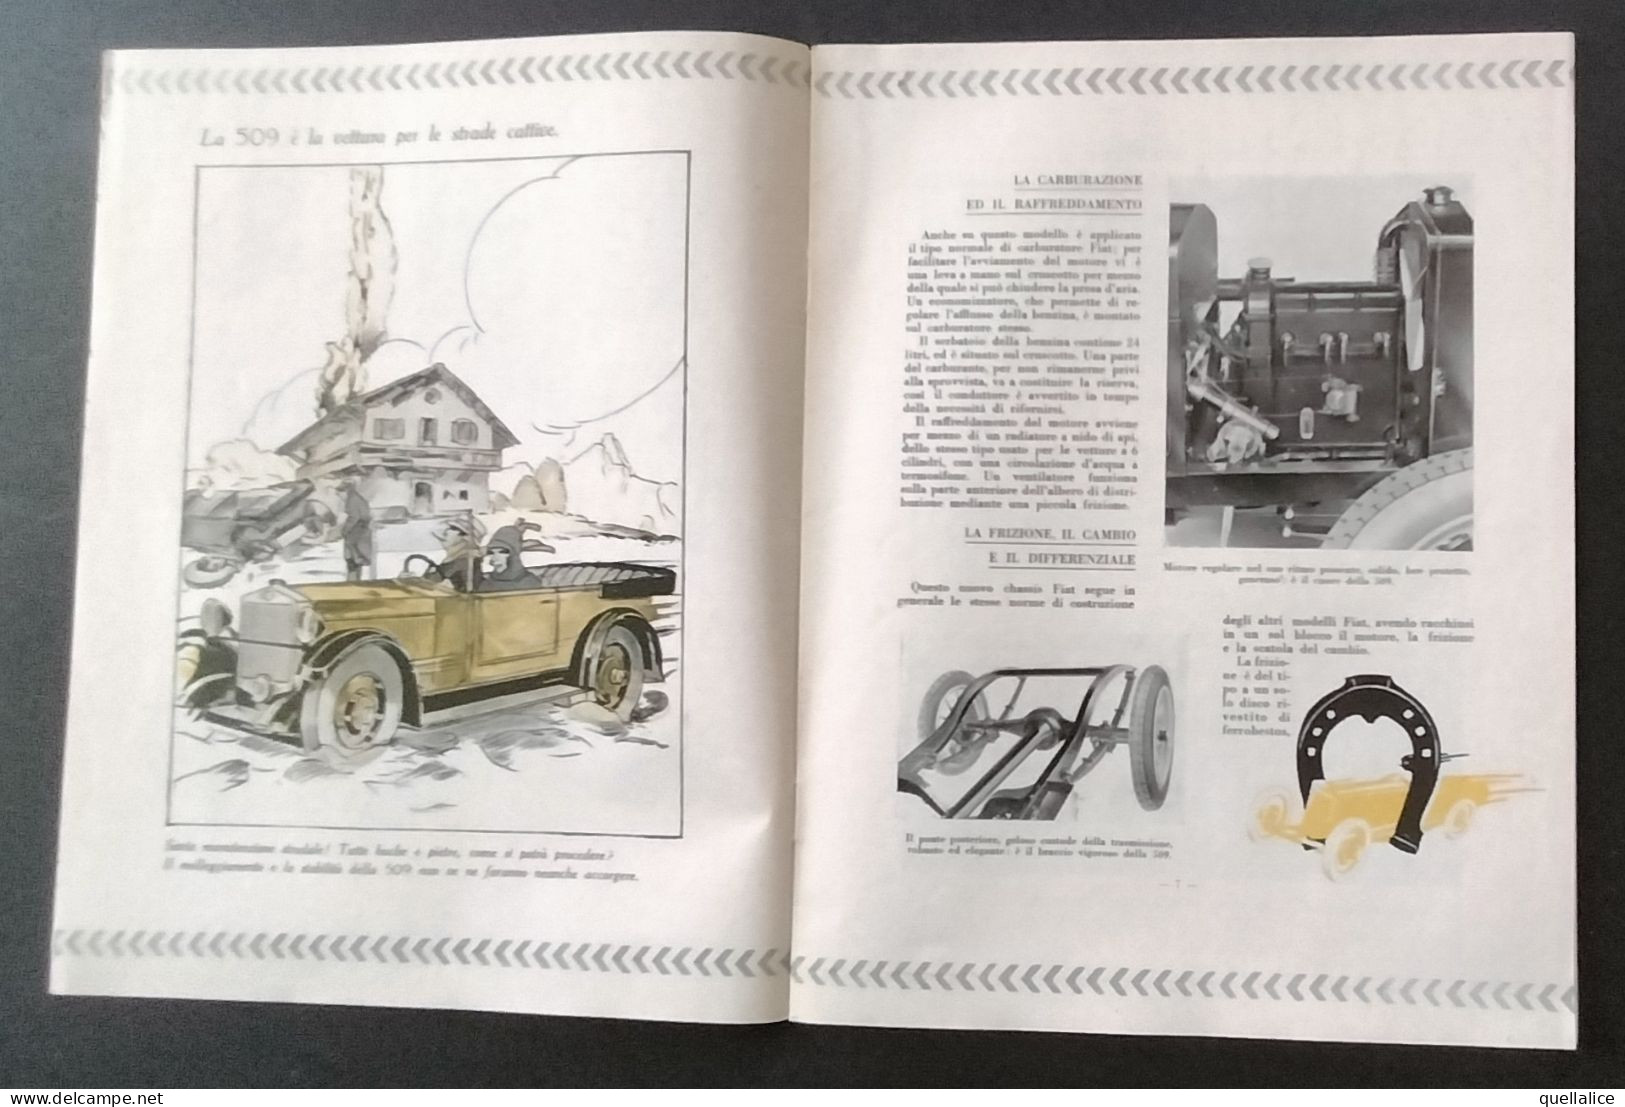 03901 "RIVISTA FIAT - MARZO/APRILE 1925 - ANNO VI N° 3/4 - NUMERO MONOGRAFICO DEDICATO AL LANCIO DELLA FIAT 509" ORIG.